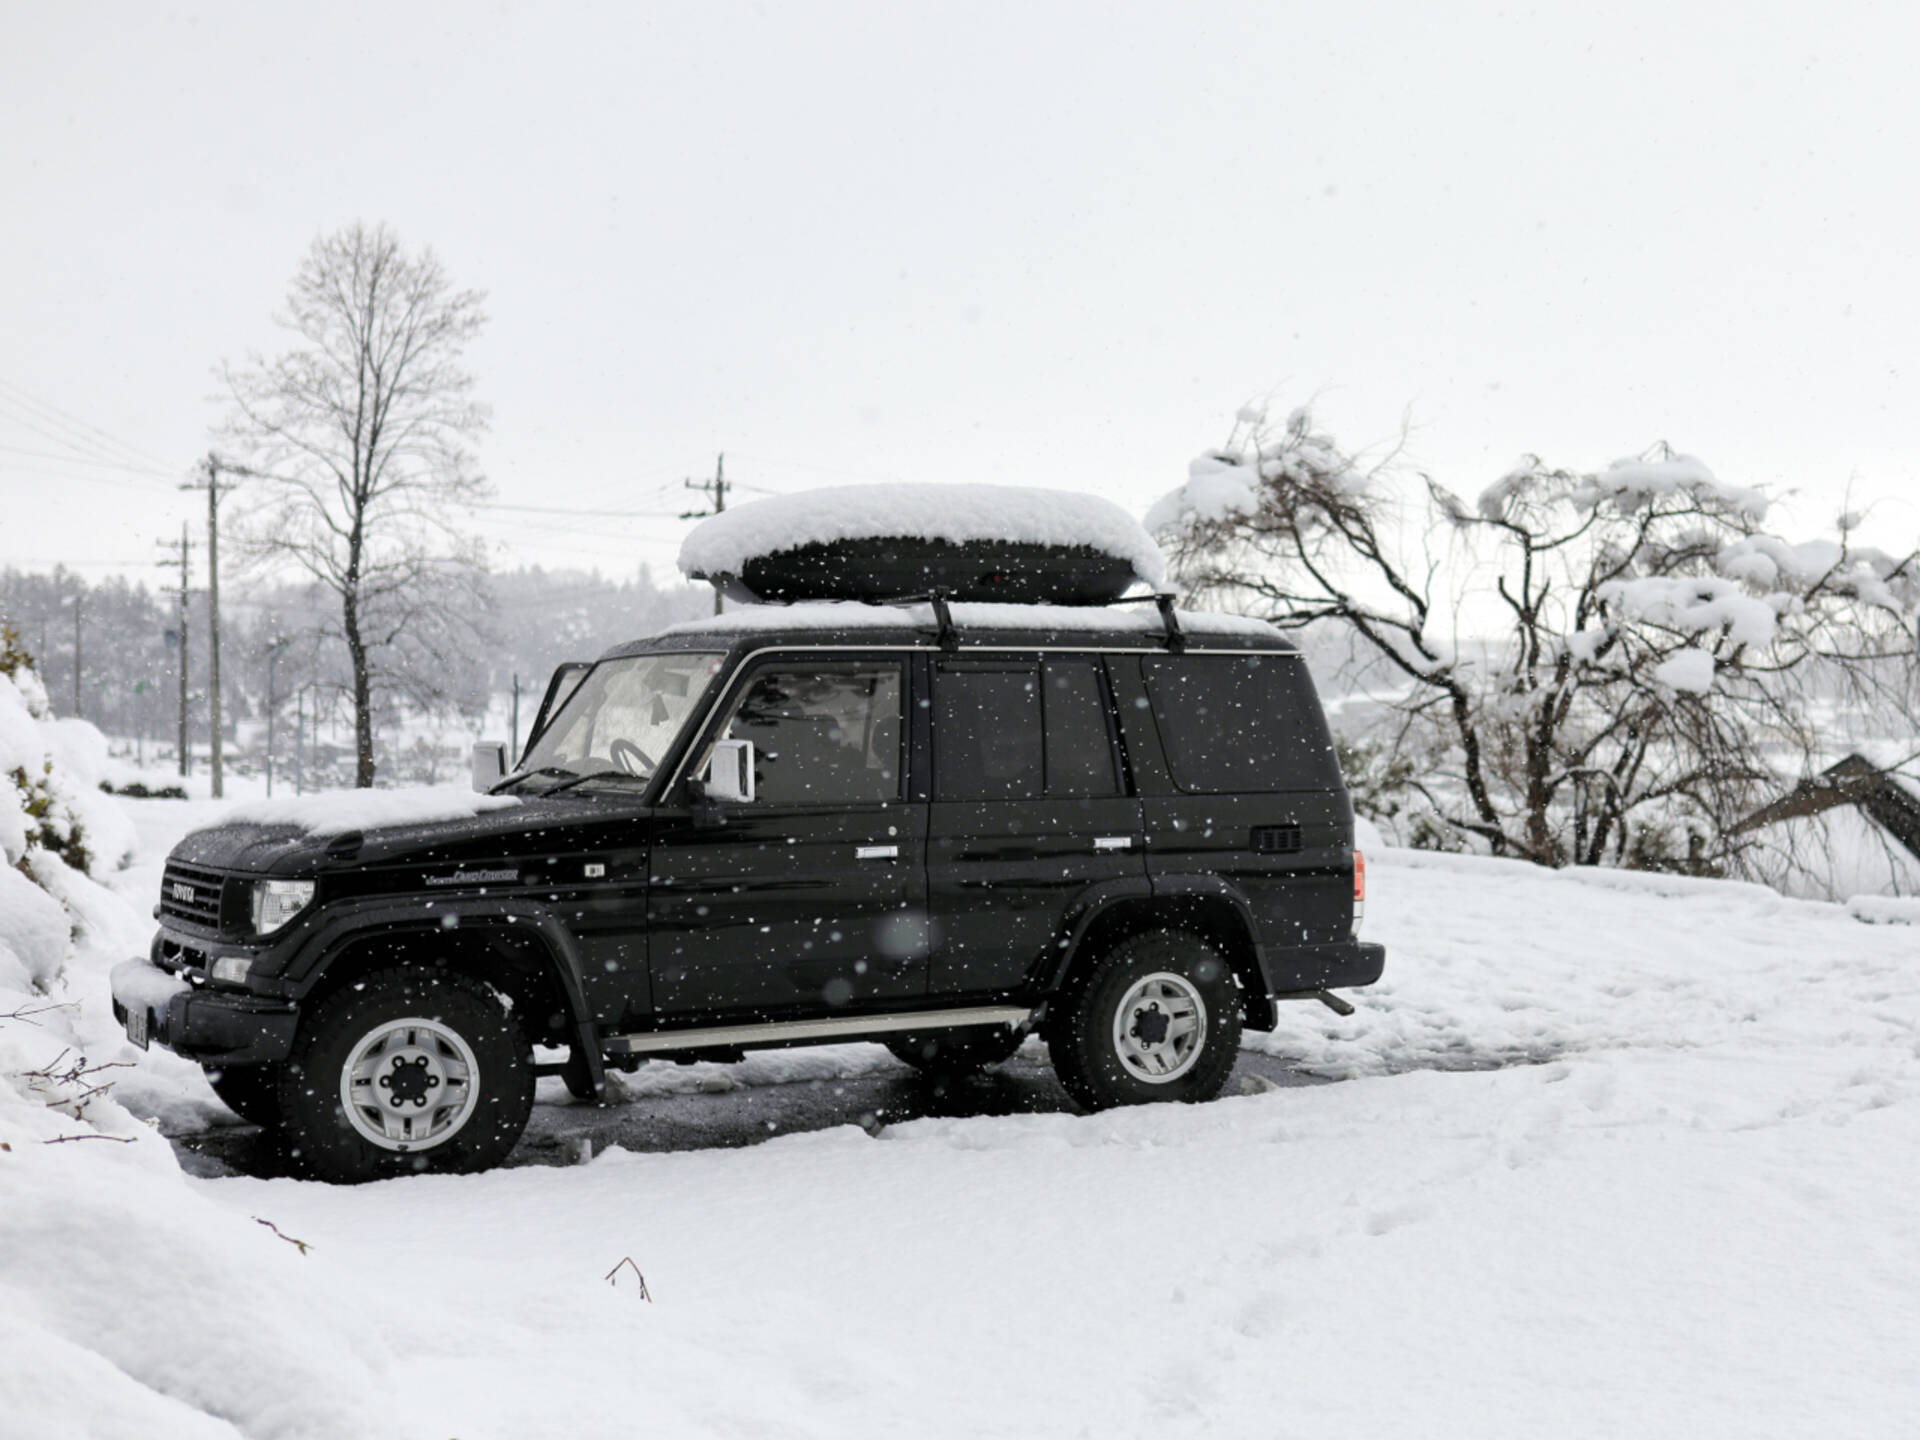 冬の車中泊は 寒さ対策 次第で快適度が段違い 手軽にできるオススメの車中泊用防寒対策 グッズをご紹介します 1 4 車と旅のwebメディア Mobility Story モビスト